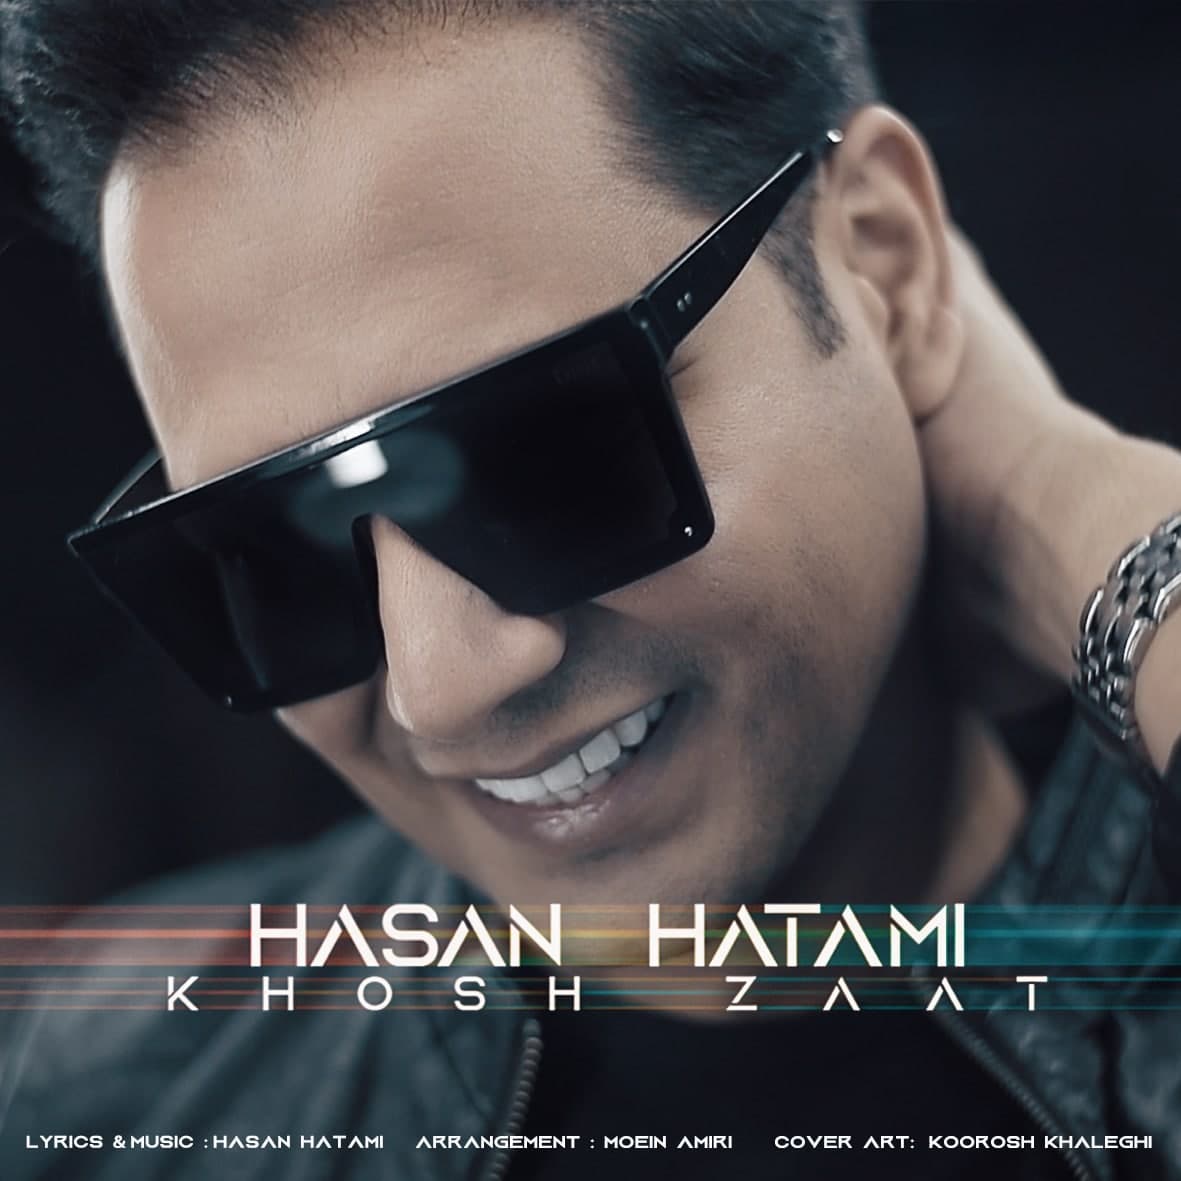 Hasan Hatami – Khosh Zat